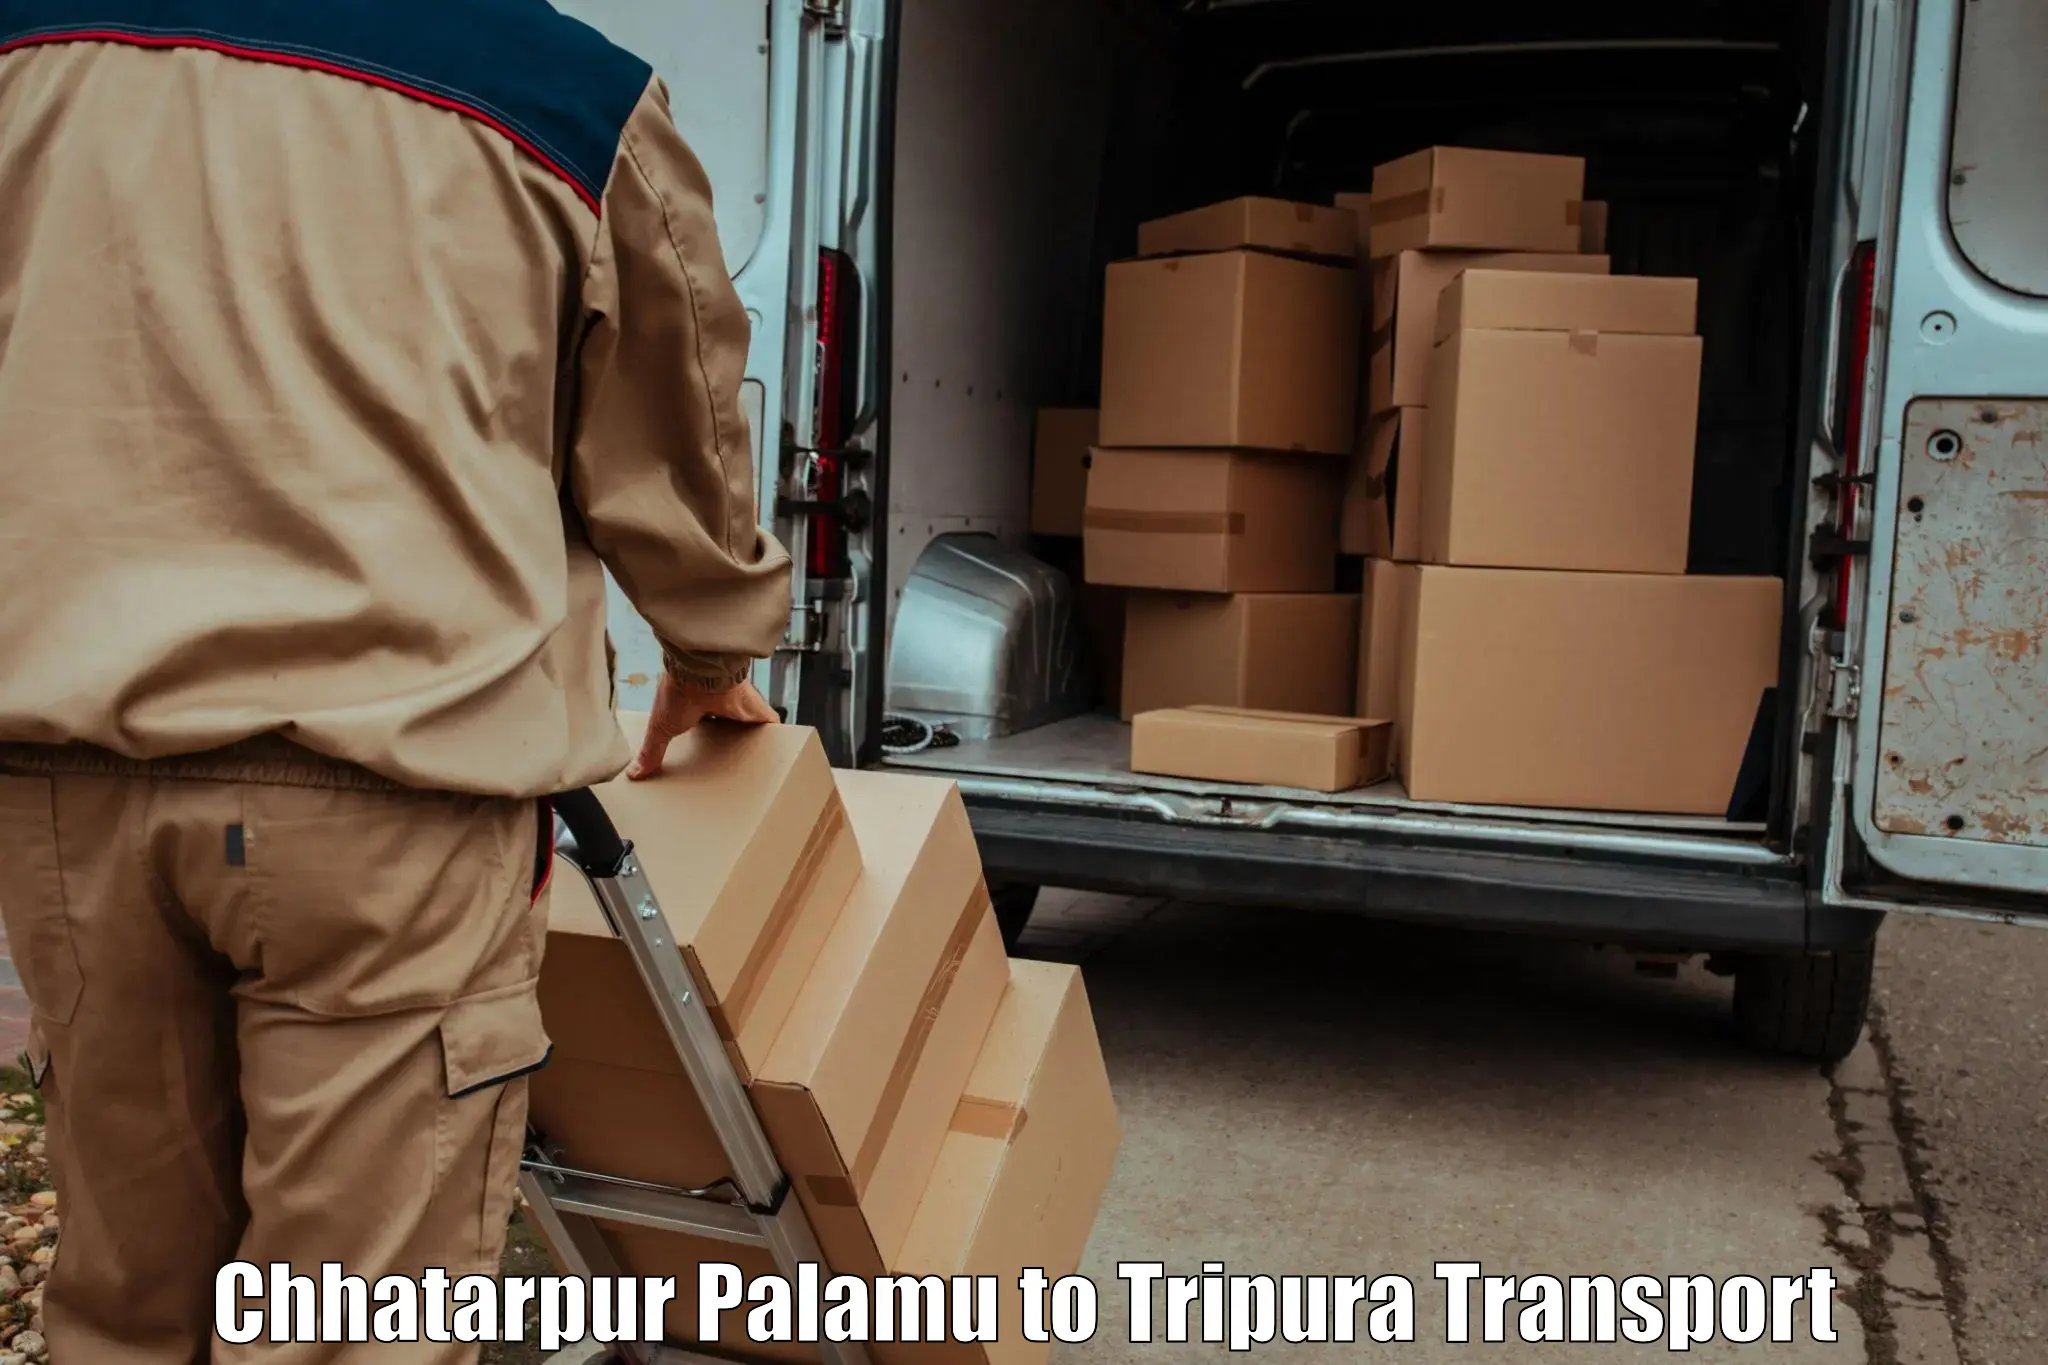 Online transport booking Chhatarpur Palamu to Manughat